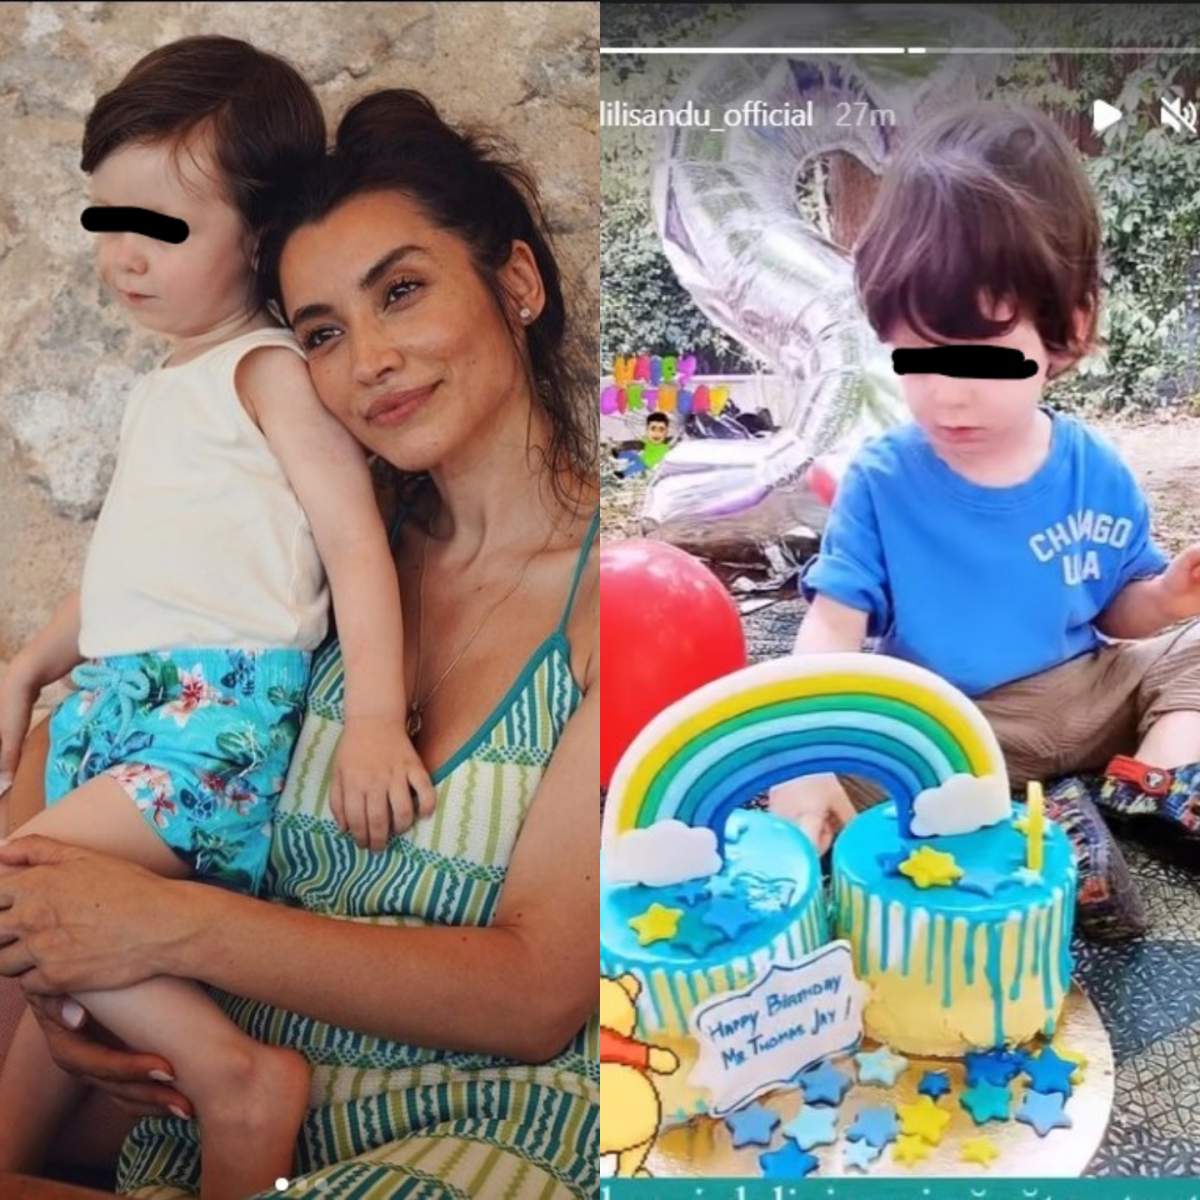 Fiul lui Lili Sandu a împlinit 2 ani. Ce mesaj emoționant a transmis vedeta pe rețelele de socializare: “Totul a început odată cu tine” / VIDEO